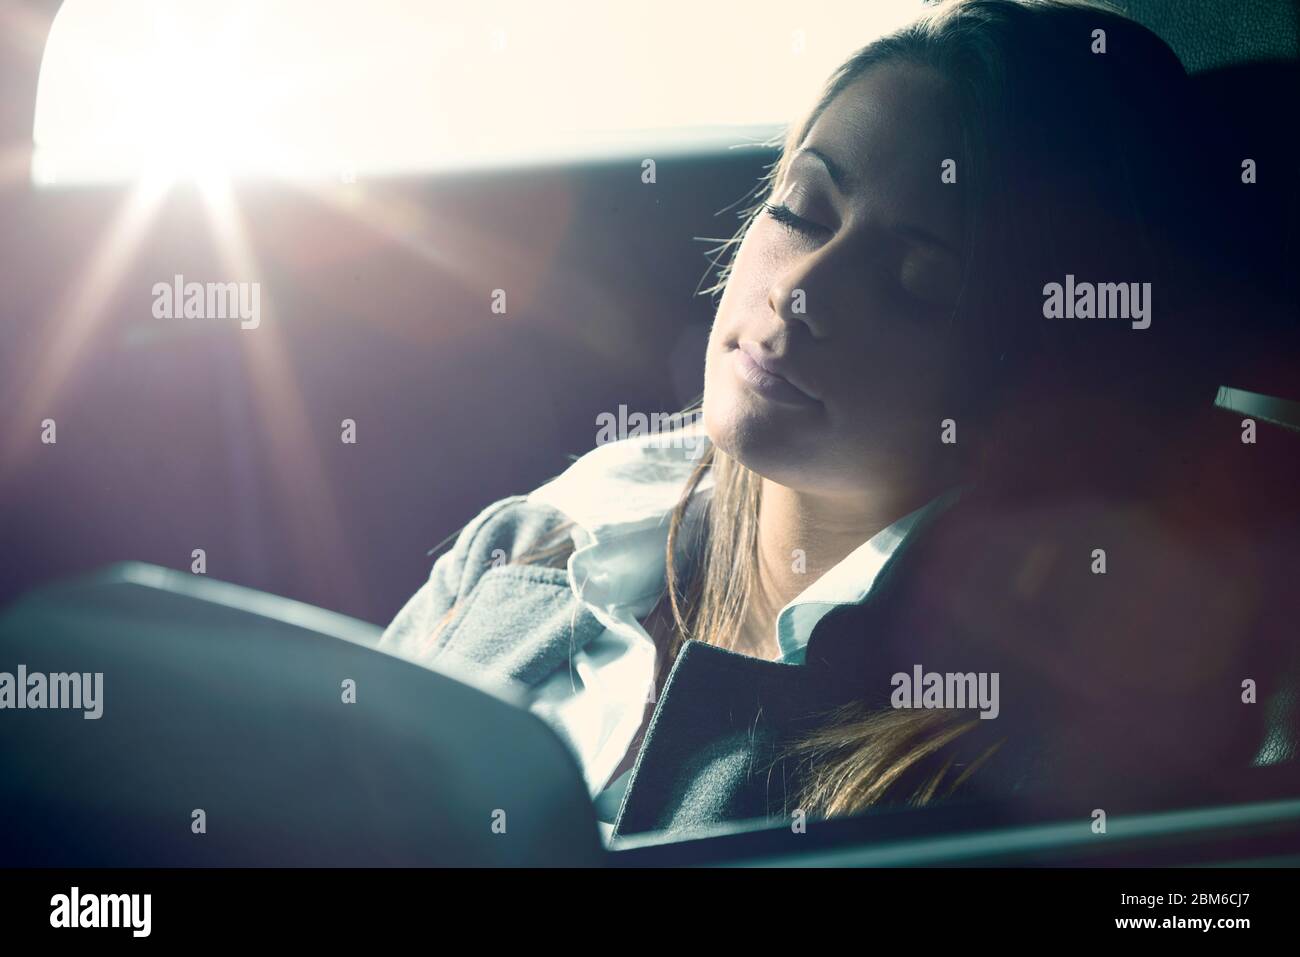 Agotado joven durmiendo en un coche con los ojos cerrados. Foto de stock